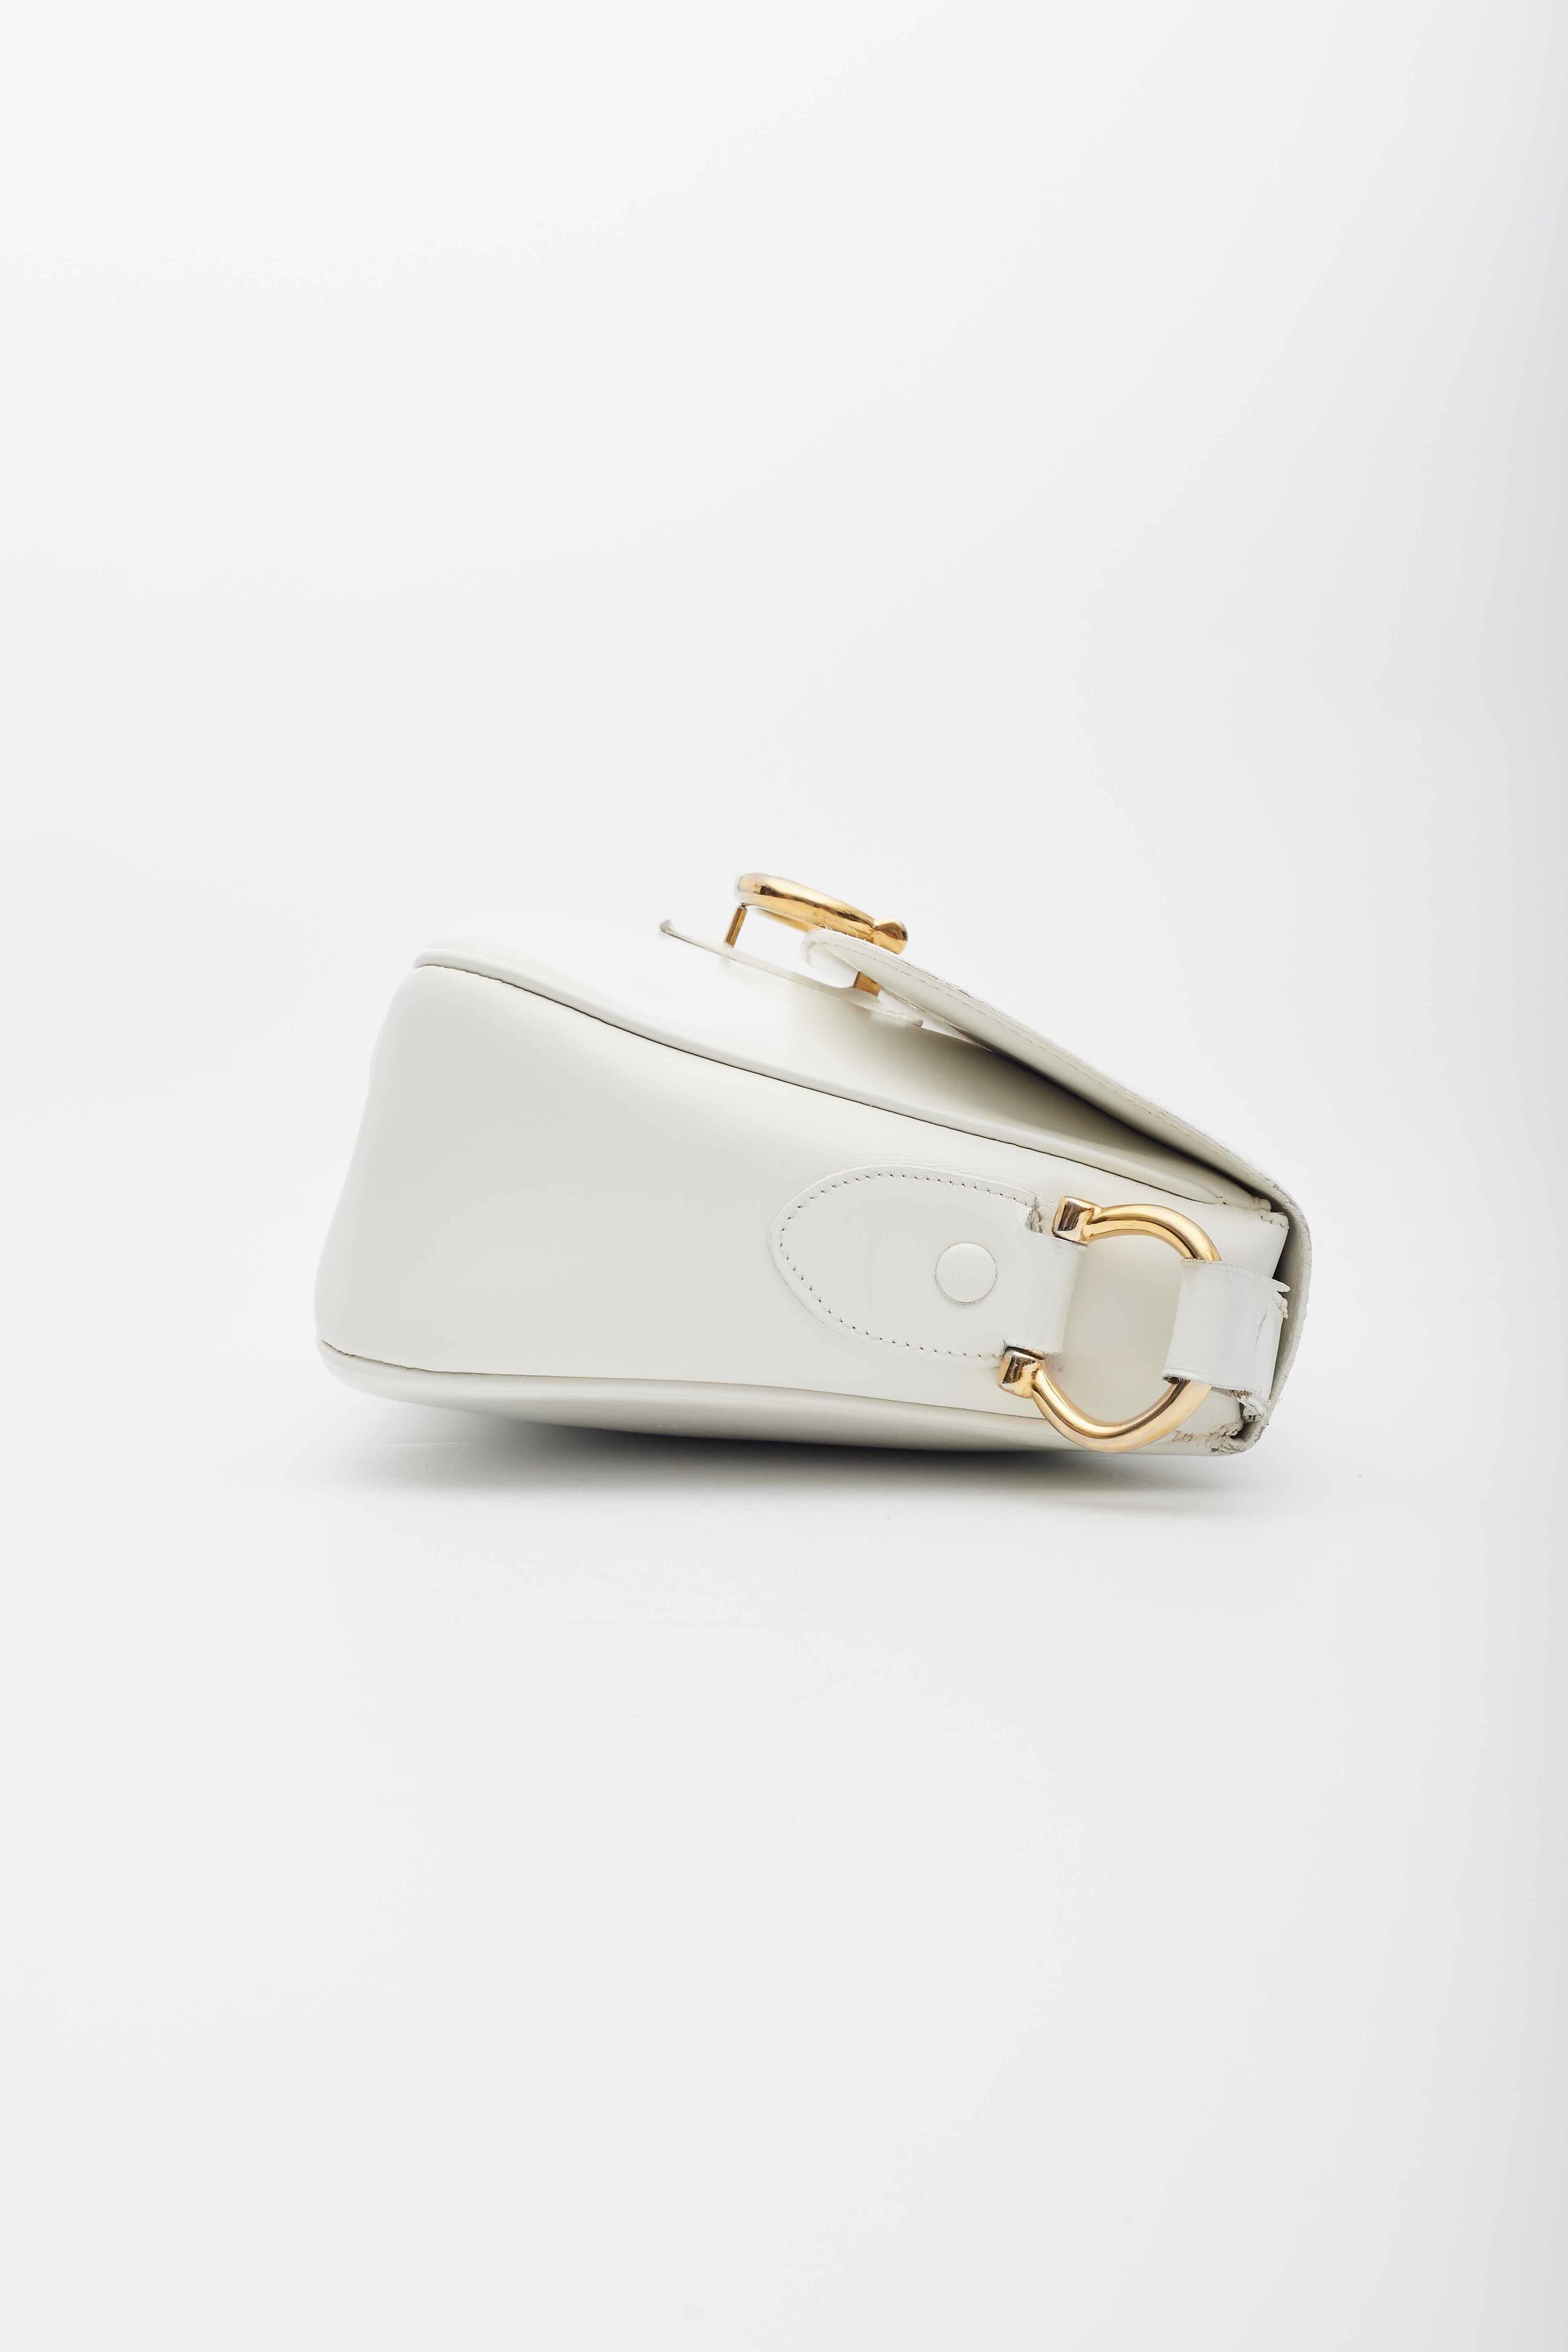 Celine Vintage White Leather Shoulder Bag For Sale 4